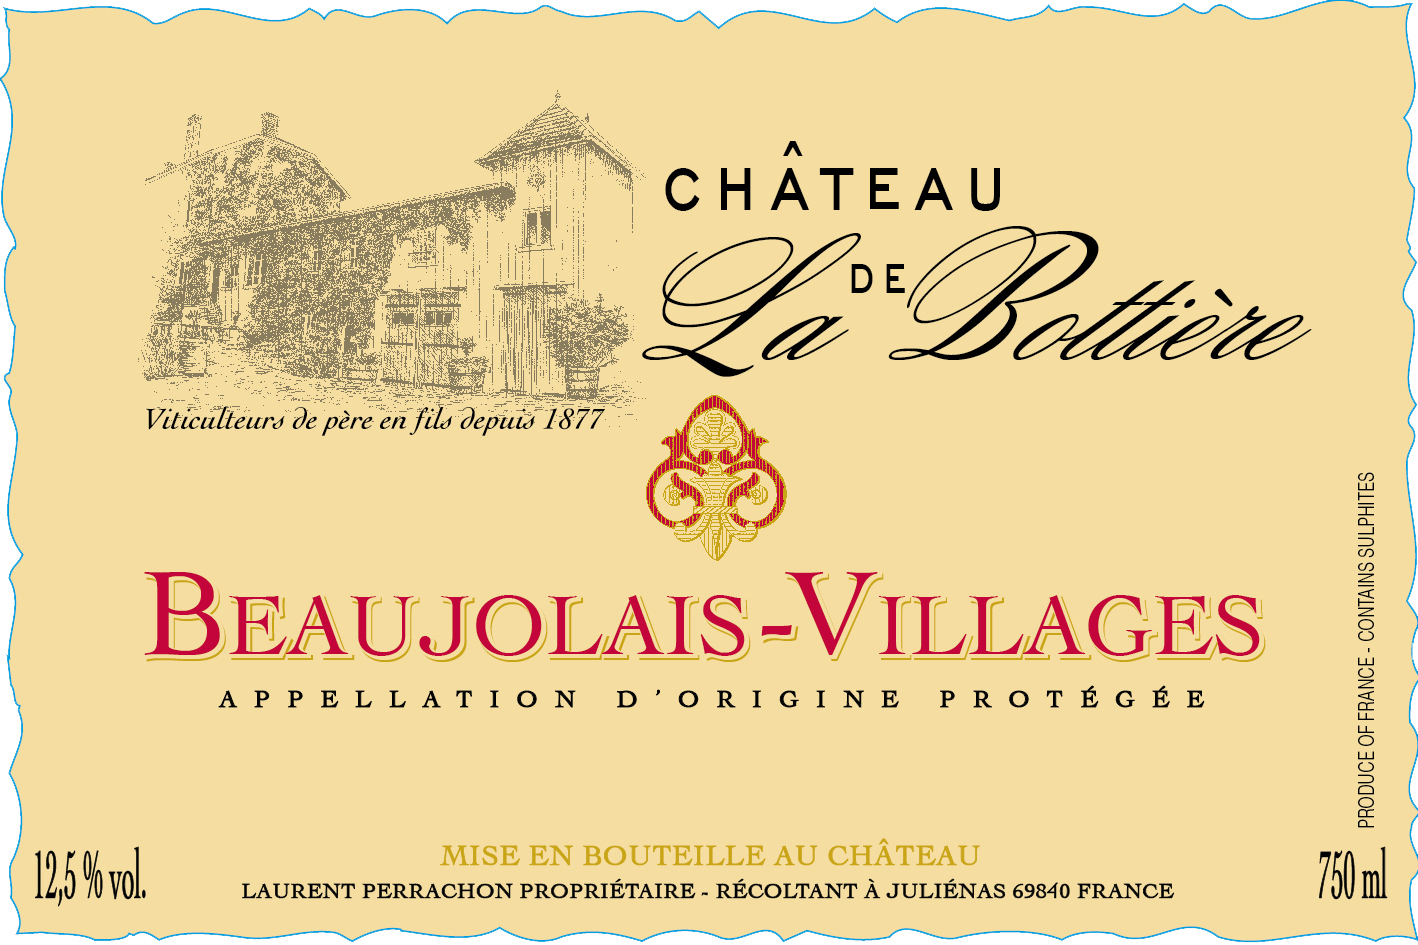 Chateau de la Bottiere - Beaujolais Villages Rouge label